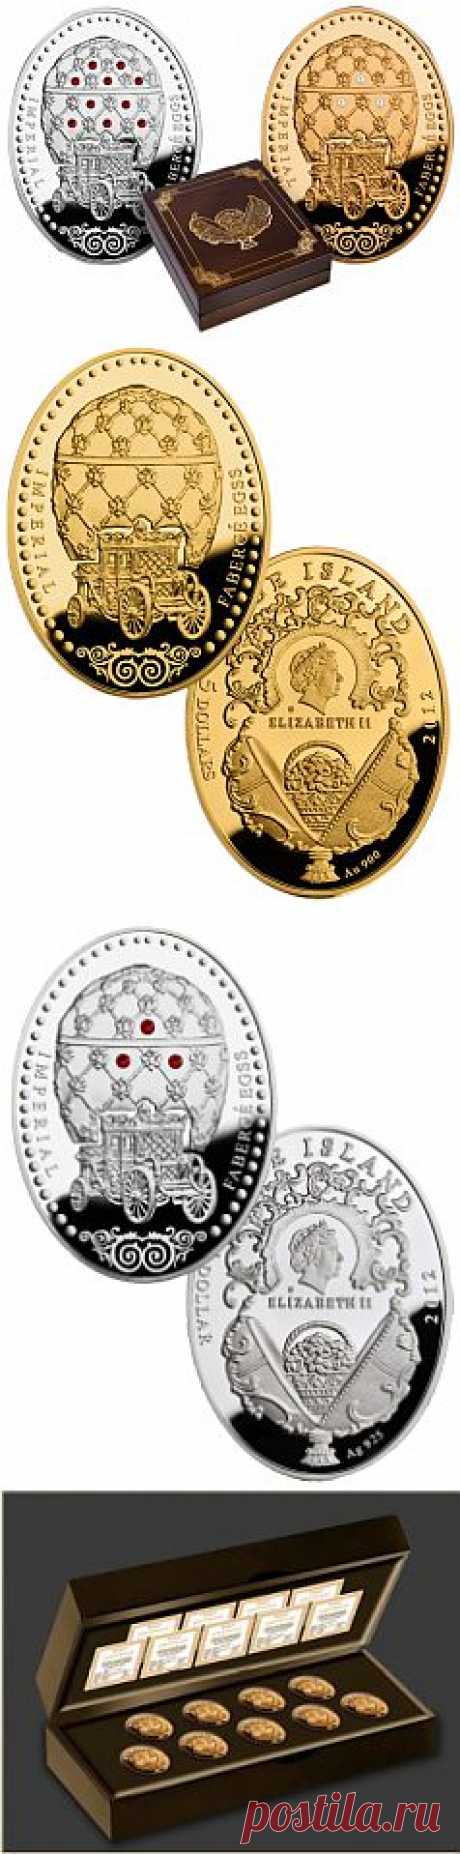 400 летие дома Романовых отметят золотыми и серебряными монетами: пять версий Коронационного яйца Фаберже от Монетного двора Польши.